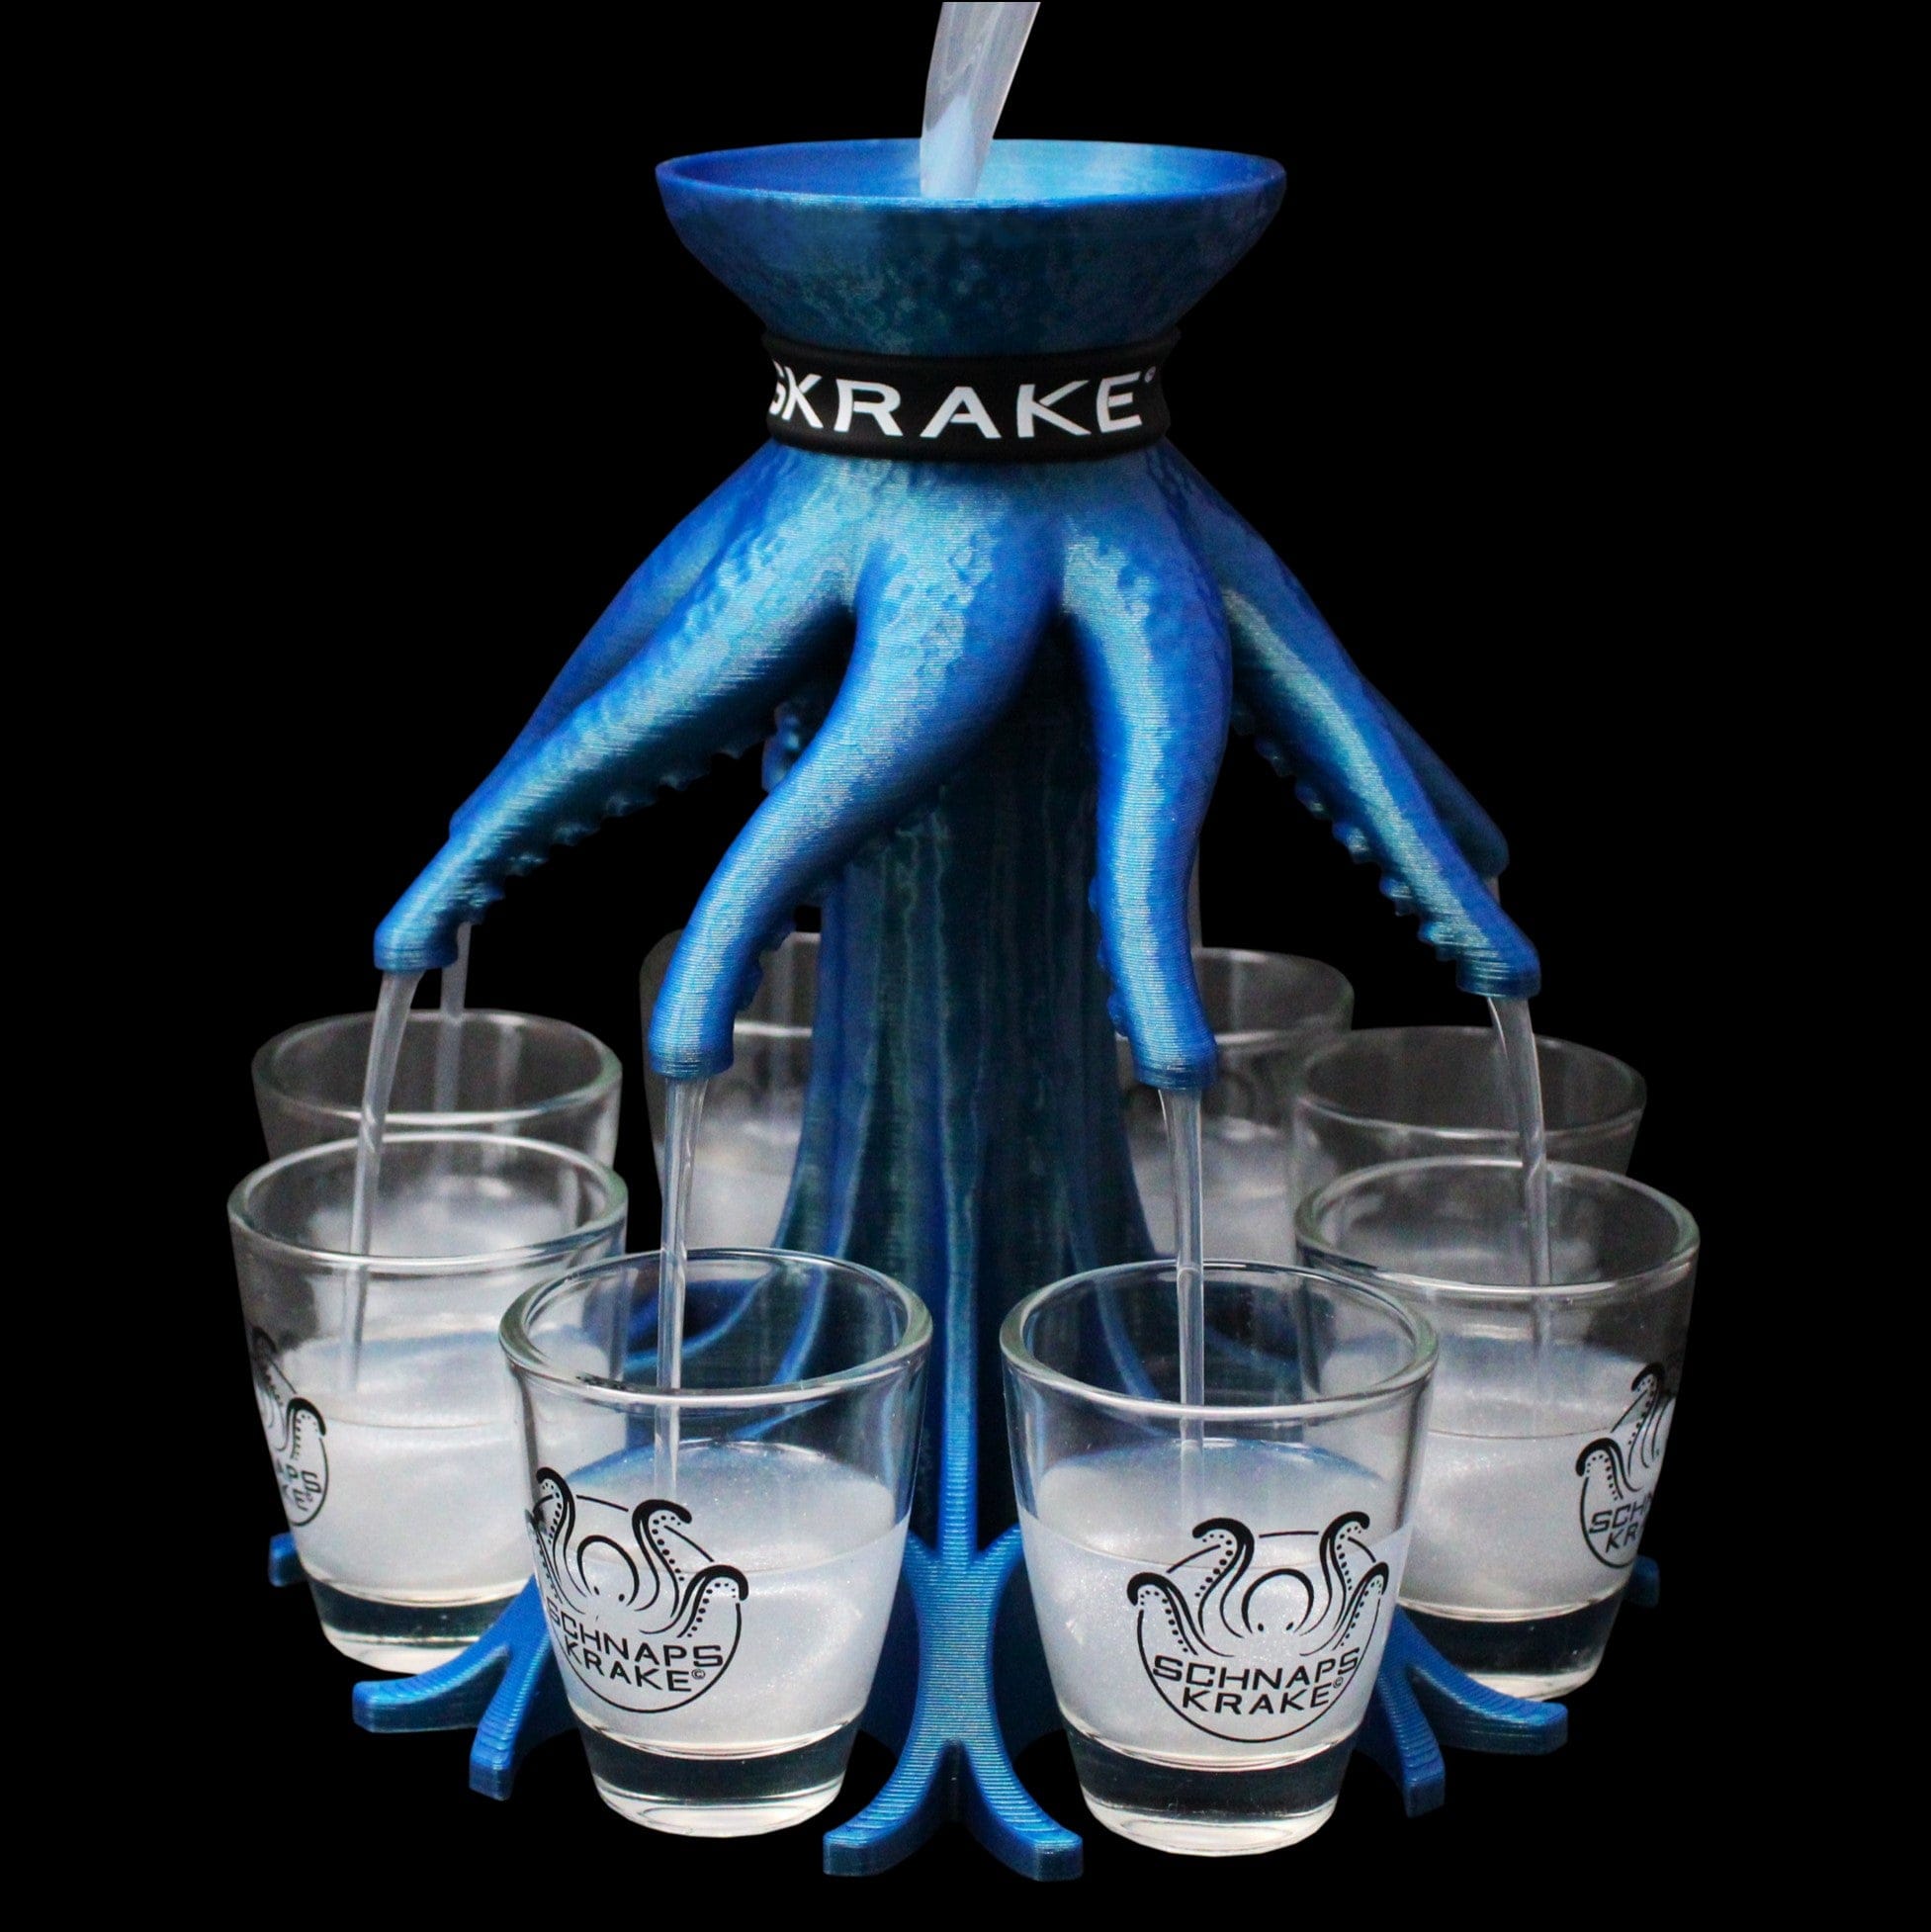 Schnapskrake blau mit Gläsern wird mit Alkohol befüllt